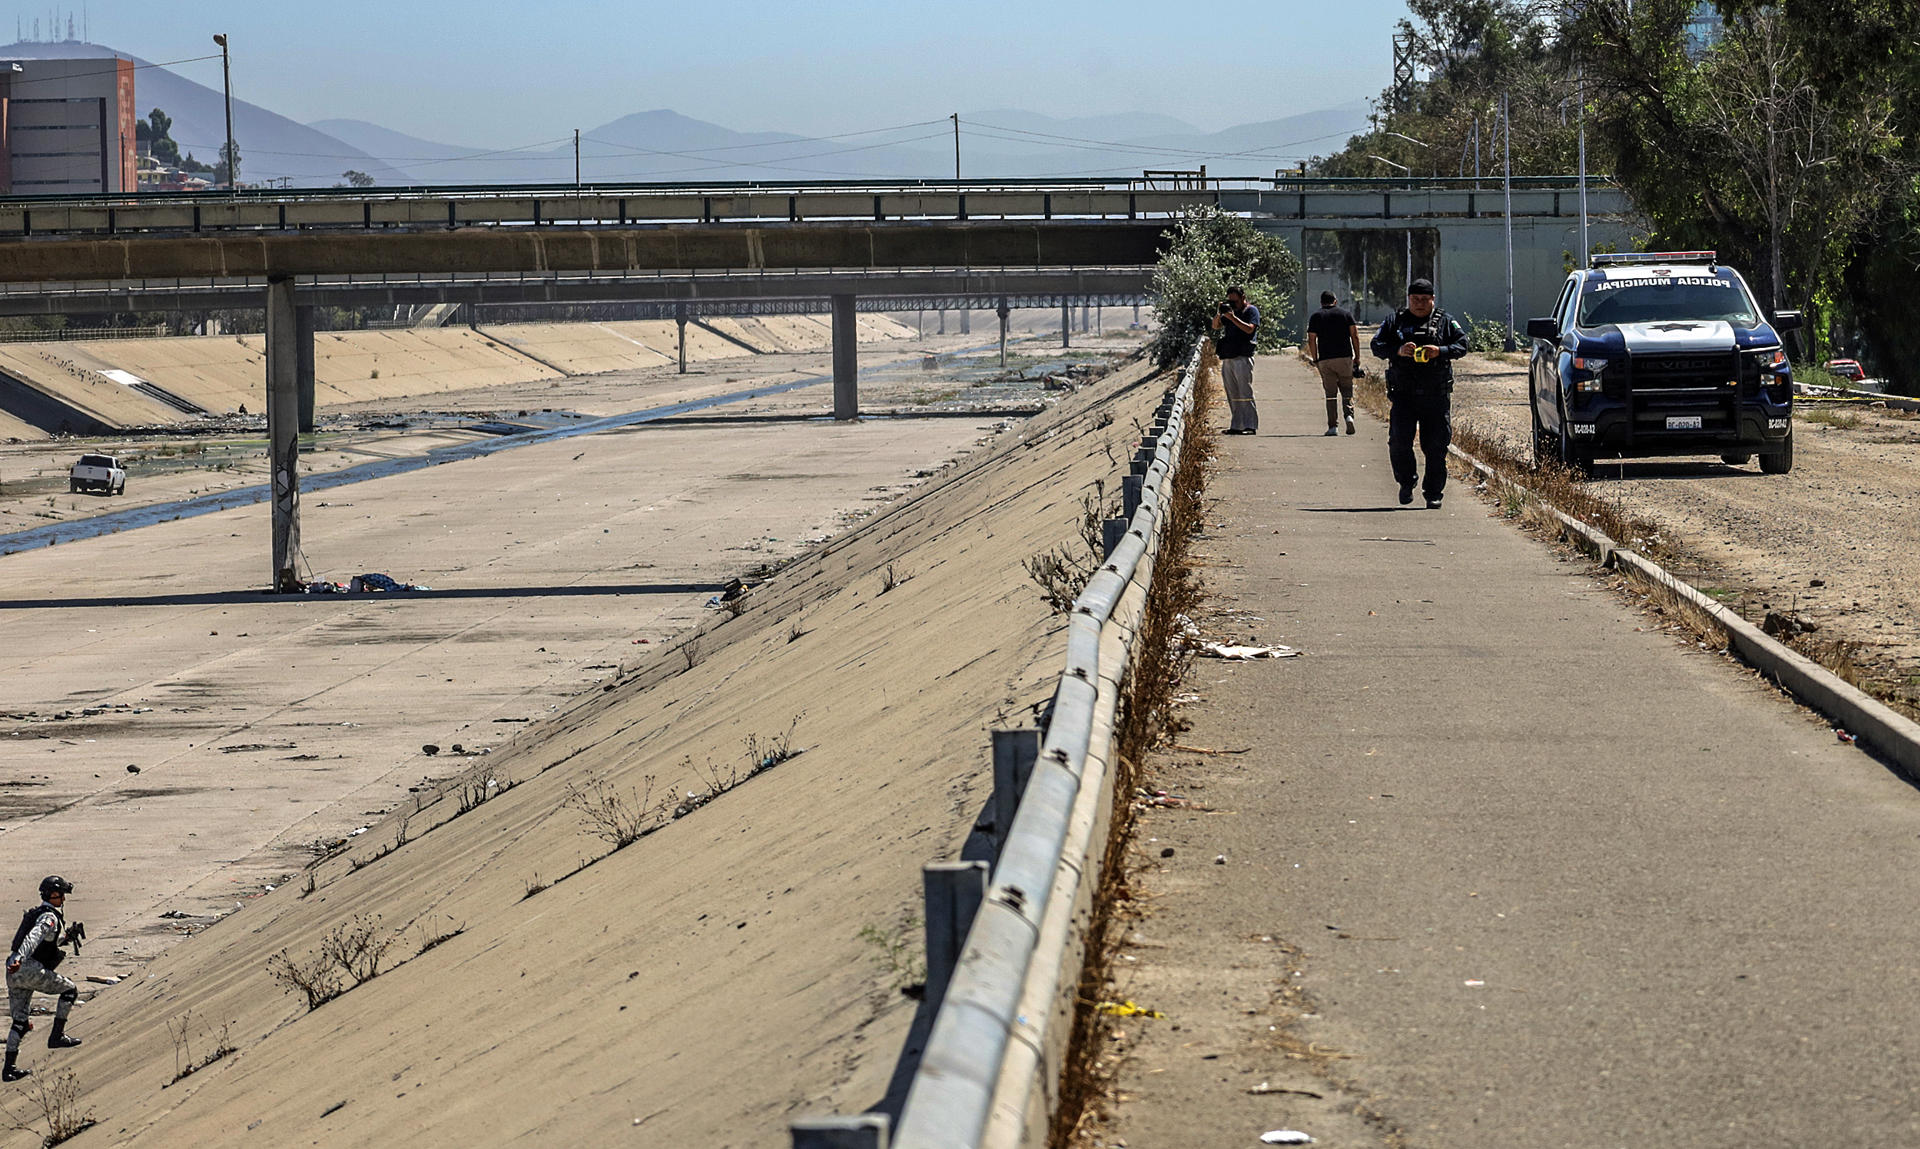 De acuerdo con información de la Secretaría de Seguridad y Protección Ciudadana Municipal (SSPCM) de Tijuana, el suceso ocurrió el pasado 11 de febrero, cuando los migrantes estaban intentando cruzar el muro y fueron abordadas por varias personas quienes 